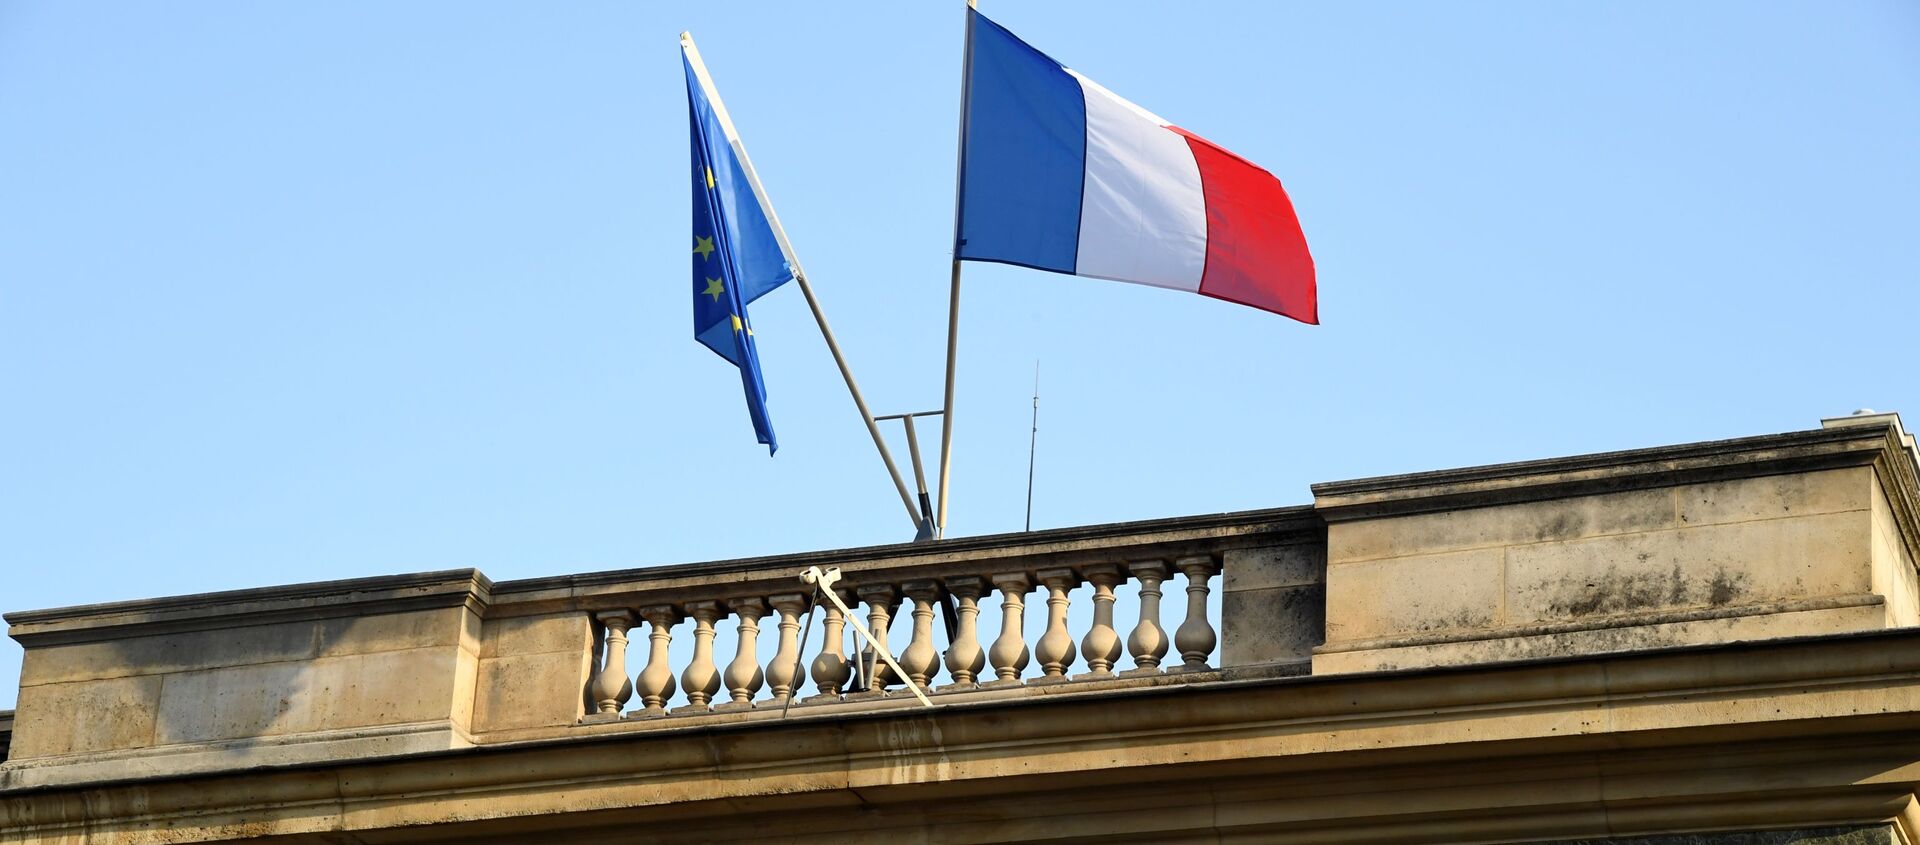  Une photo prise le 18 octobre 2018 sur la place du Palais Royal à Paris montre une vue de l'entrée du Conseil d'État français. - Sputnik Afrique, 1920, 18.01.2021